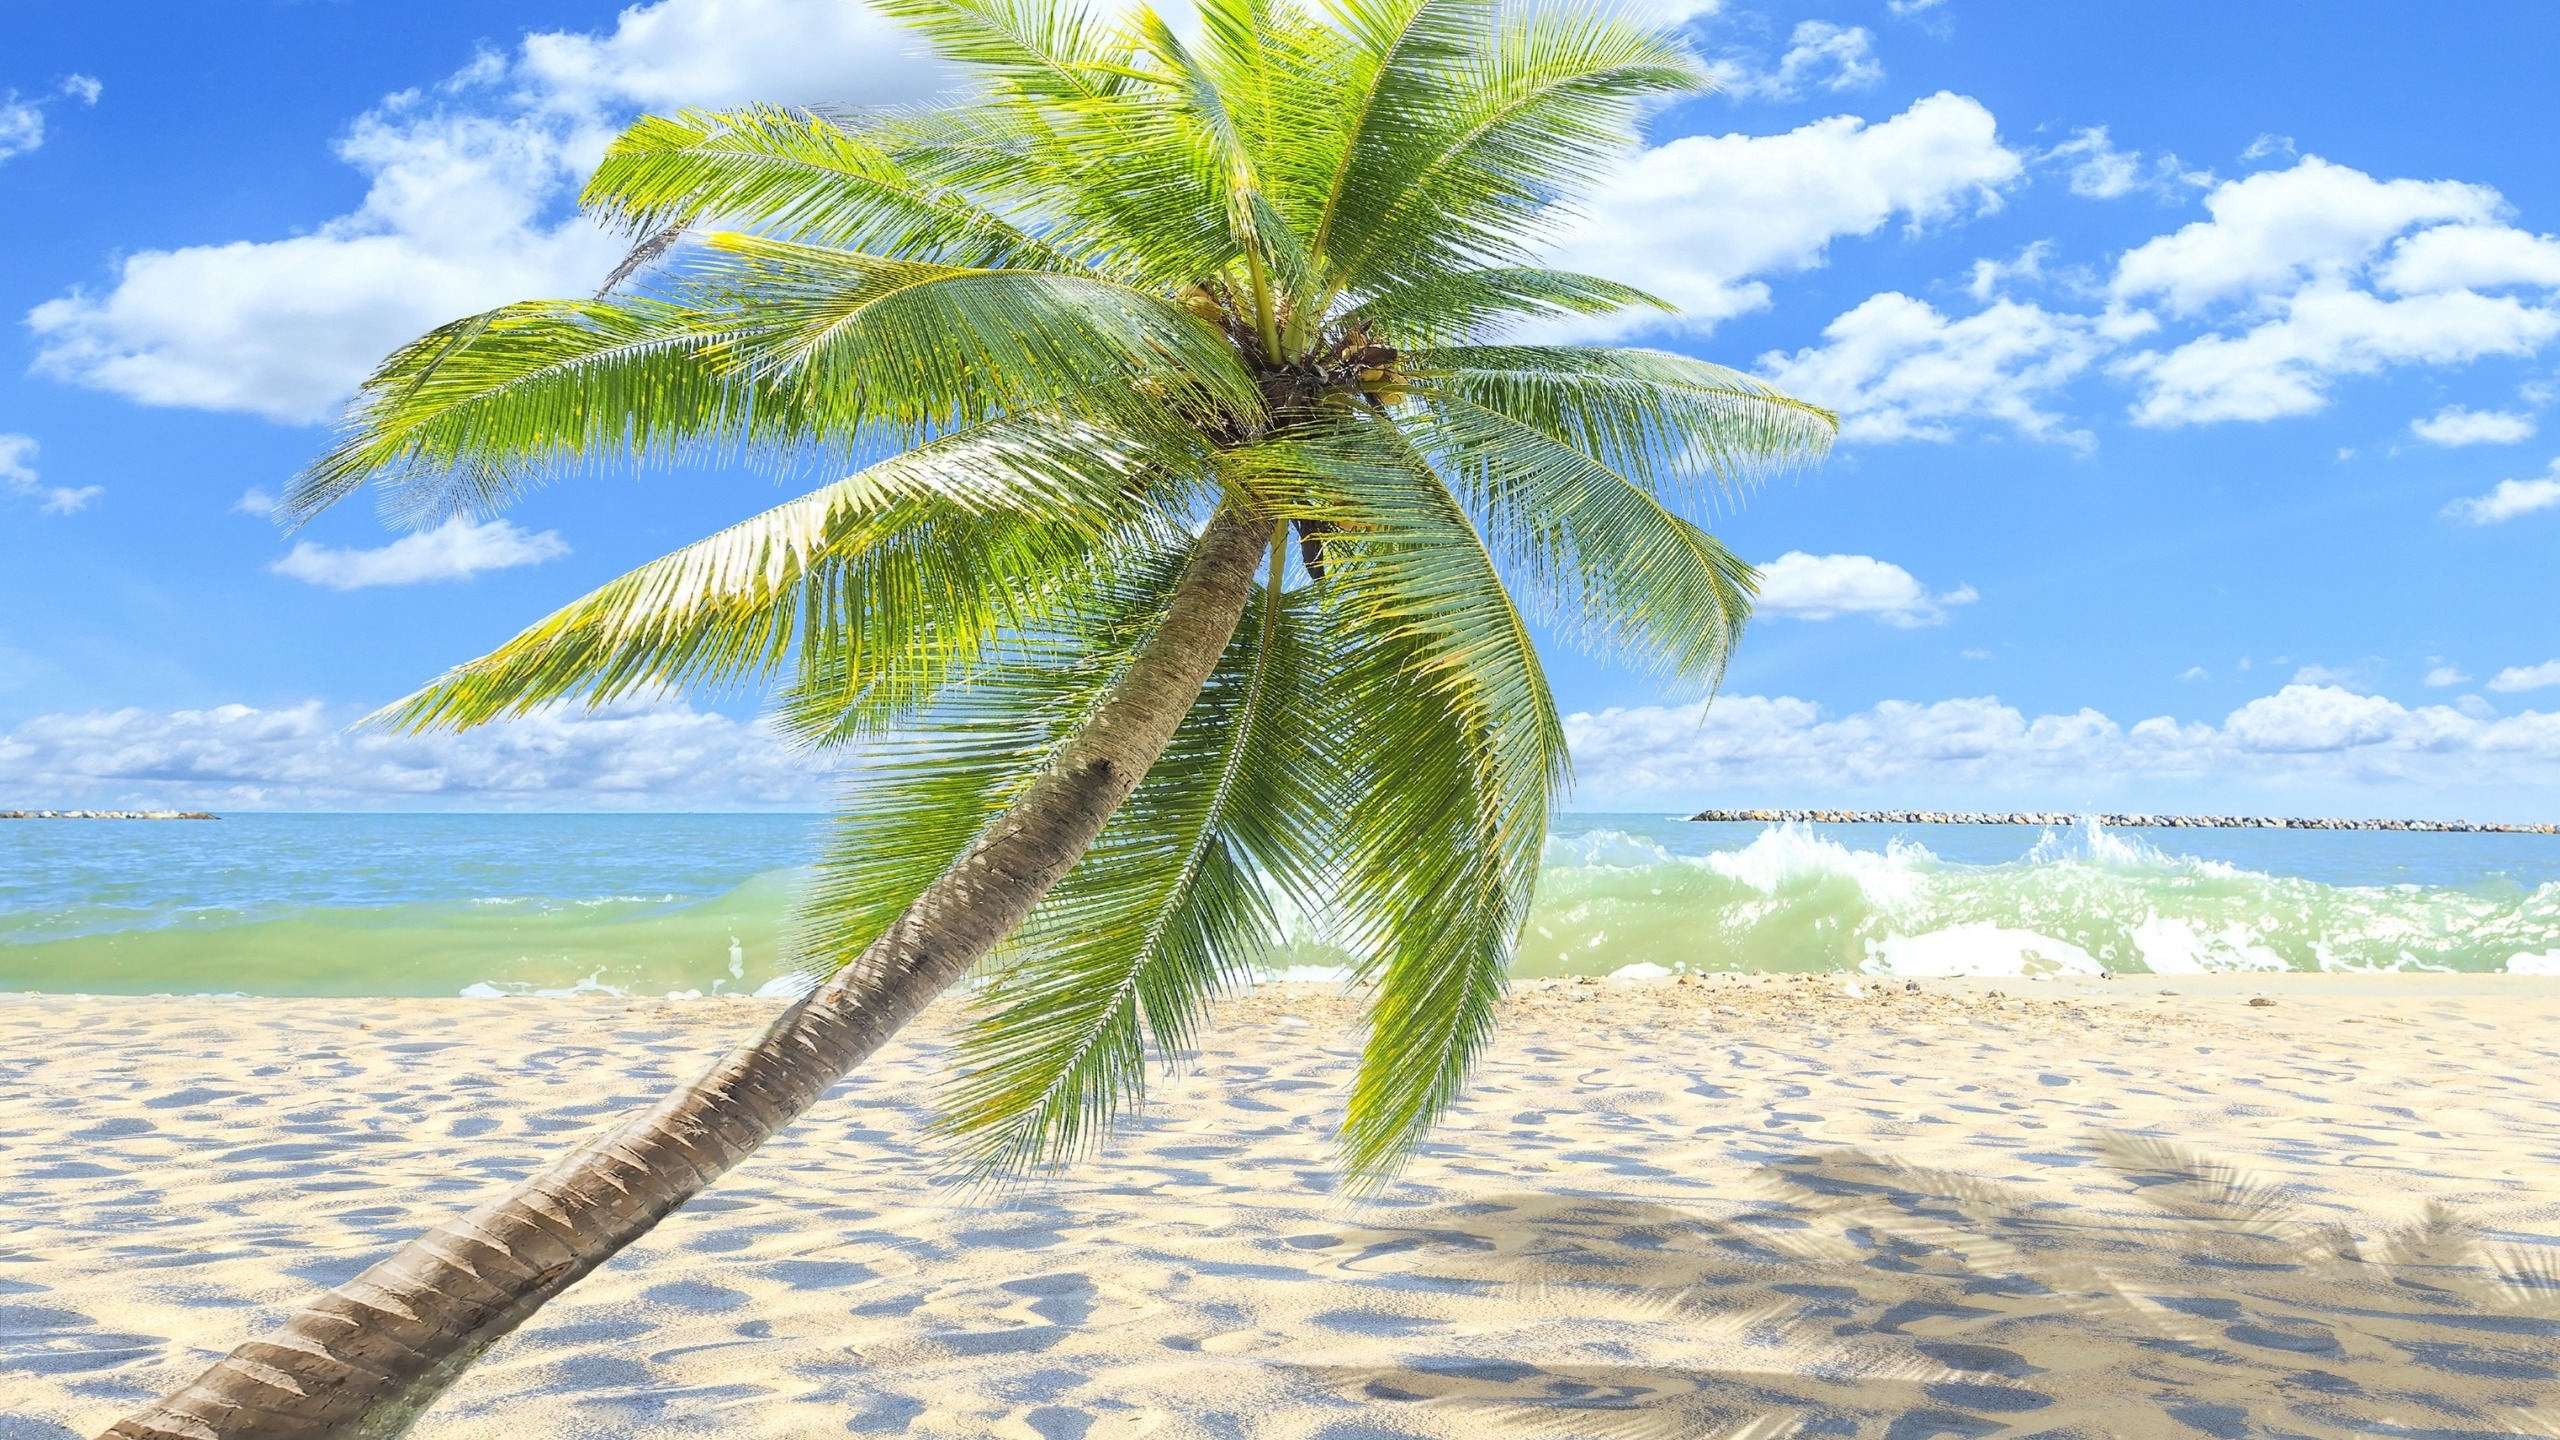 Sunny Tropical Beach  for 2560x1440 HDTV resolution